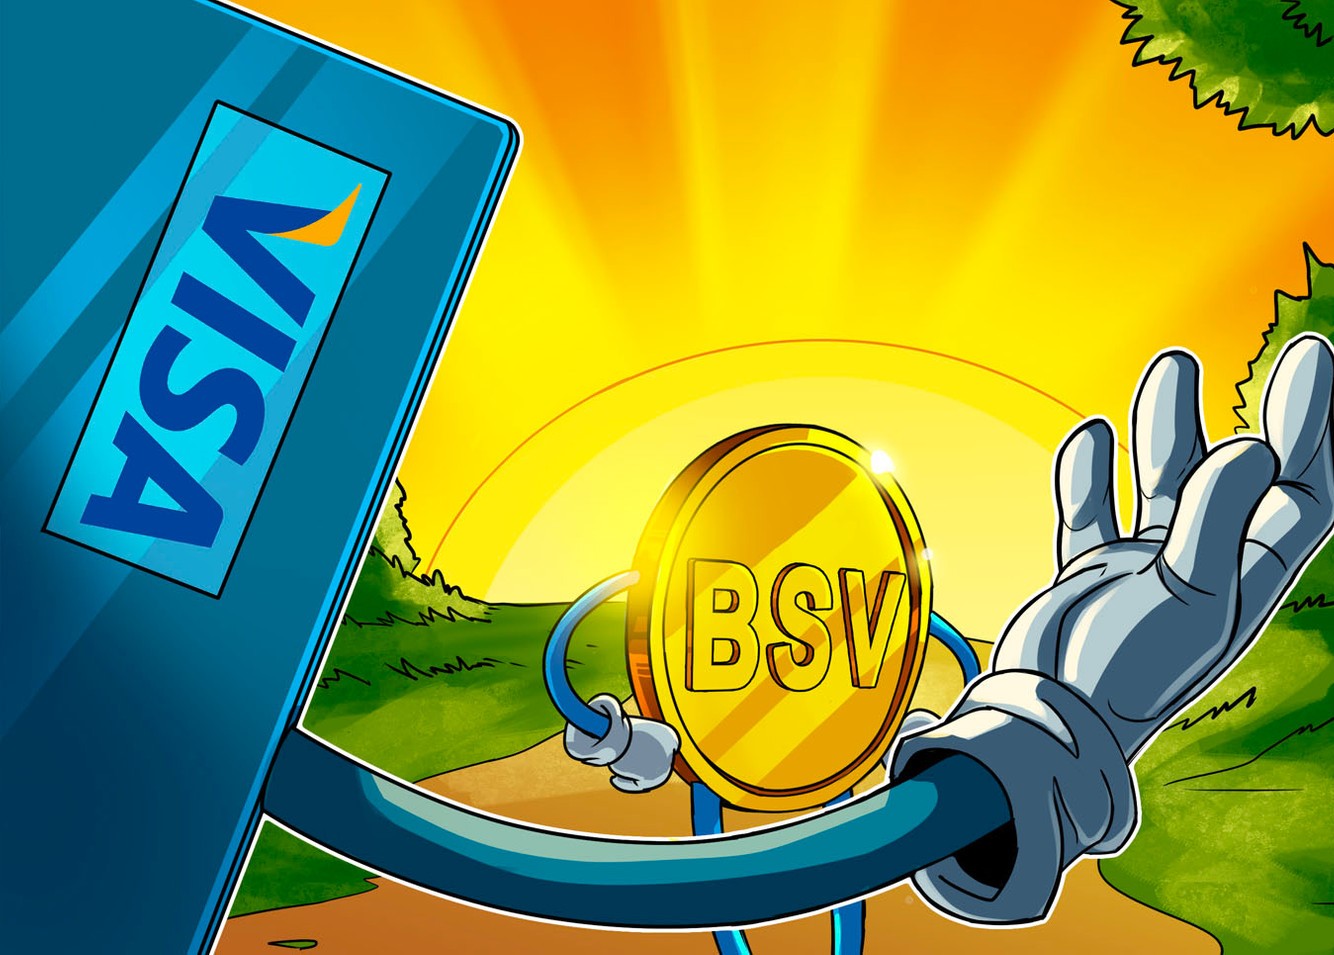 ارز دیجیتال BSV بیت کوین اس وی - Bitcoin SV بر روی چه کیف پول های ذخیره می شود؟